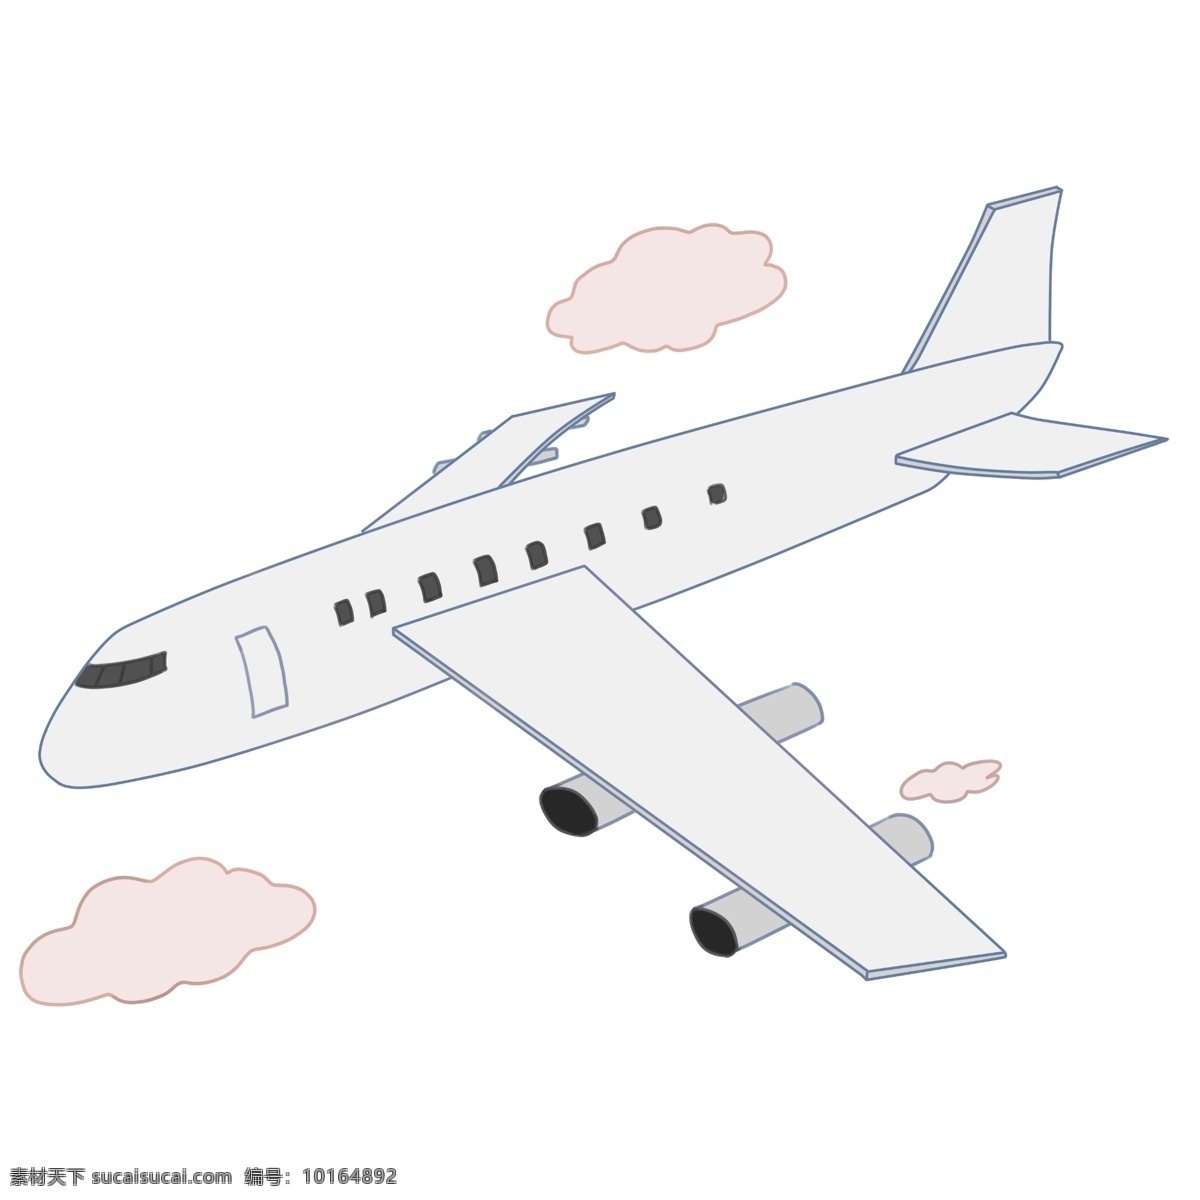 正在 飞行 飞机 插图 交通工具 客机 平流层 云朵 空中 飞机插图 白色飞机